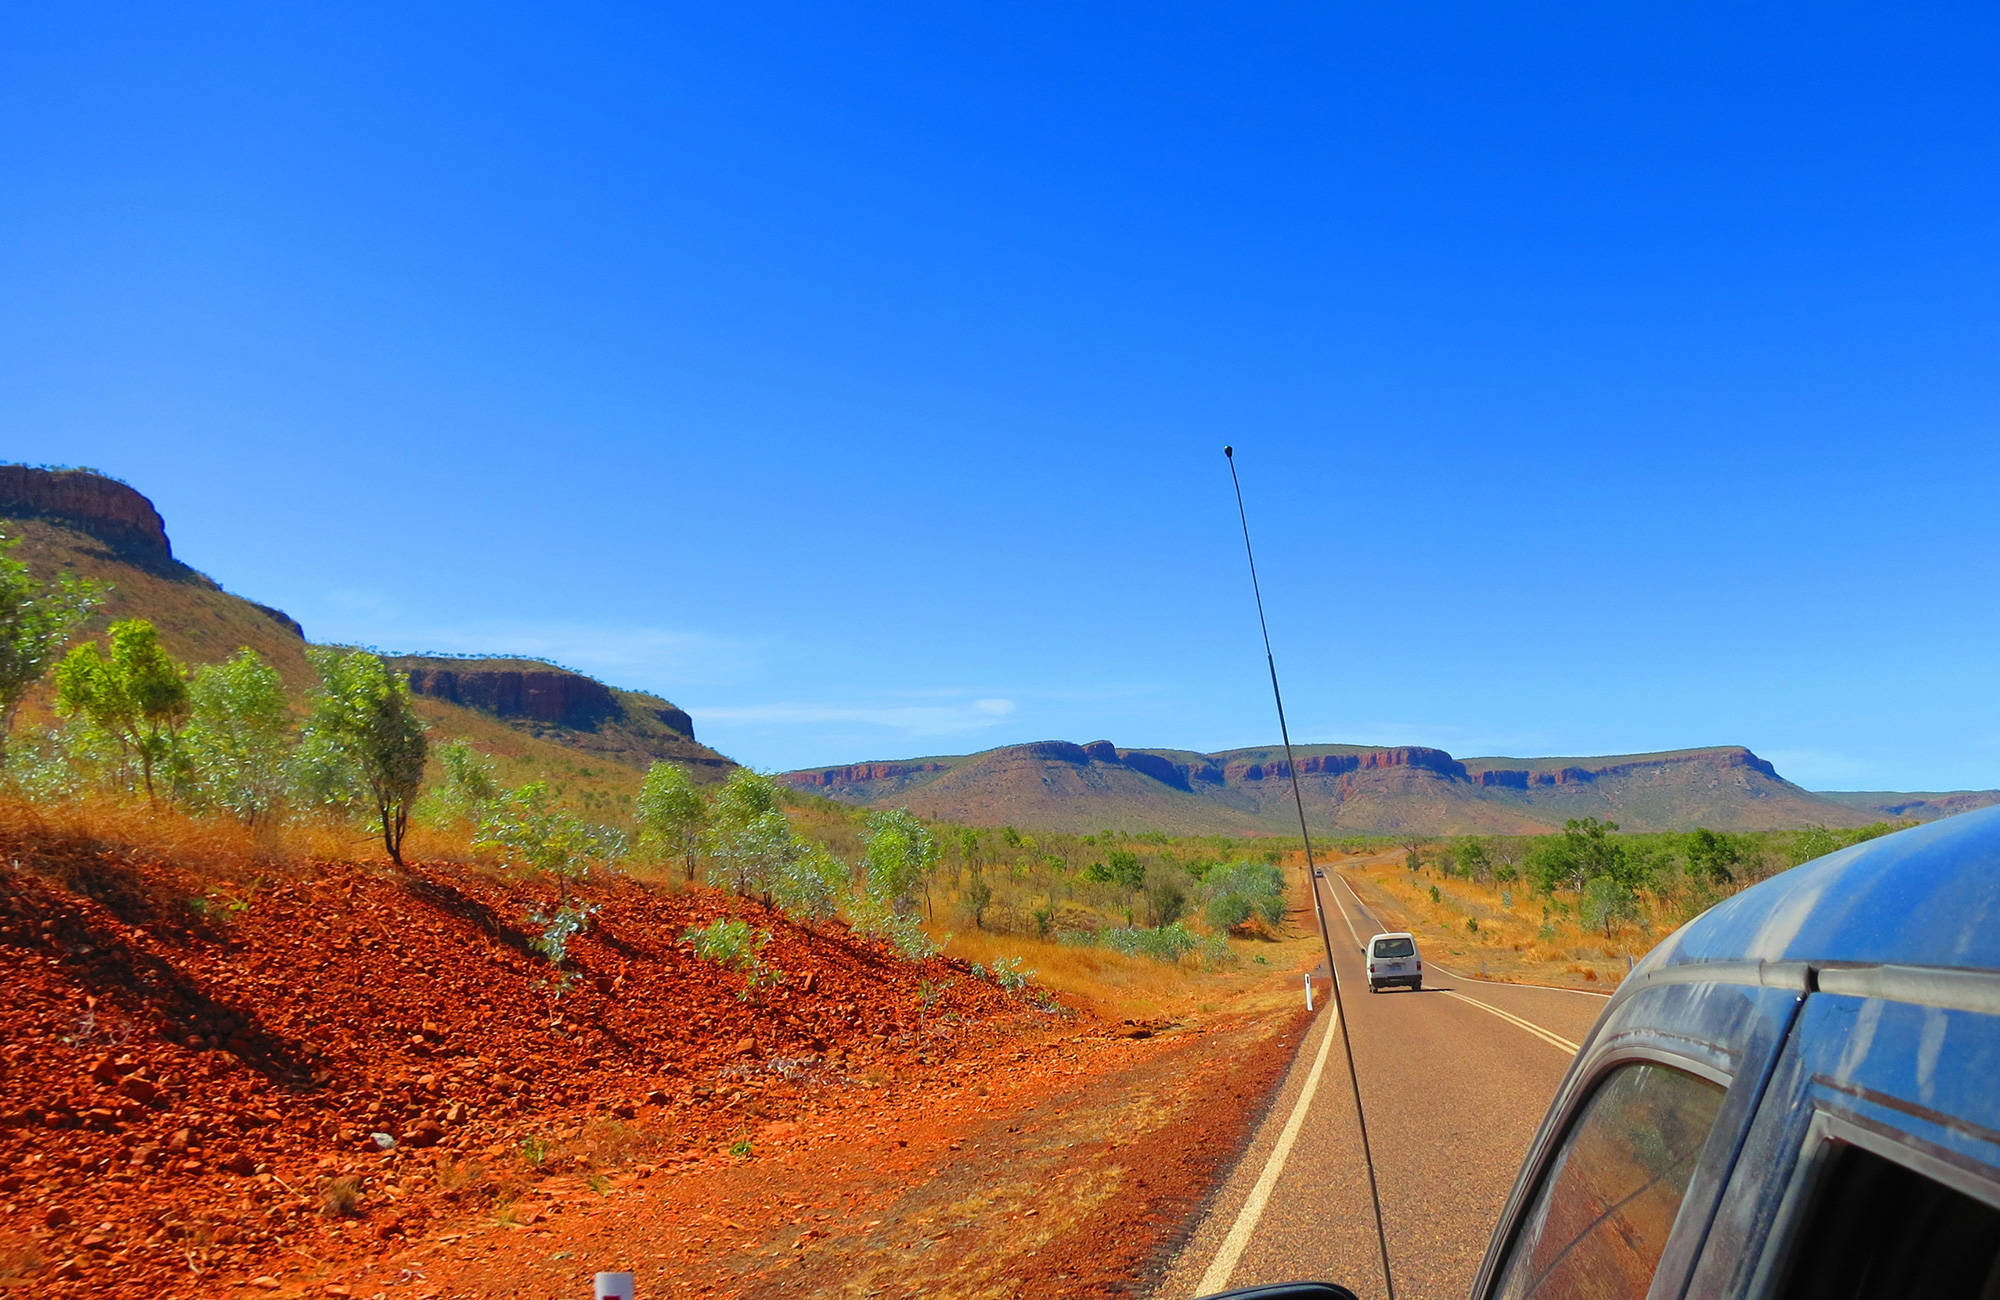 Auto's op de weg in de outback | De Outback van Australië in 13 dagen | KILROY